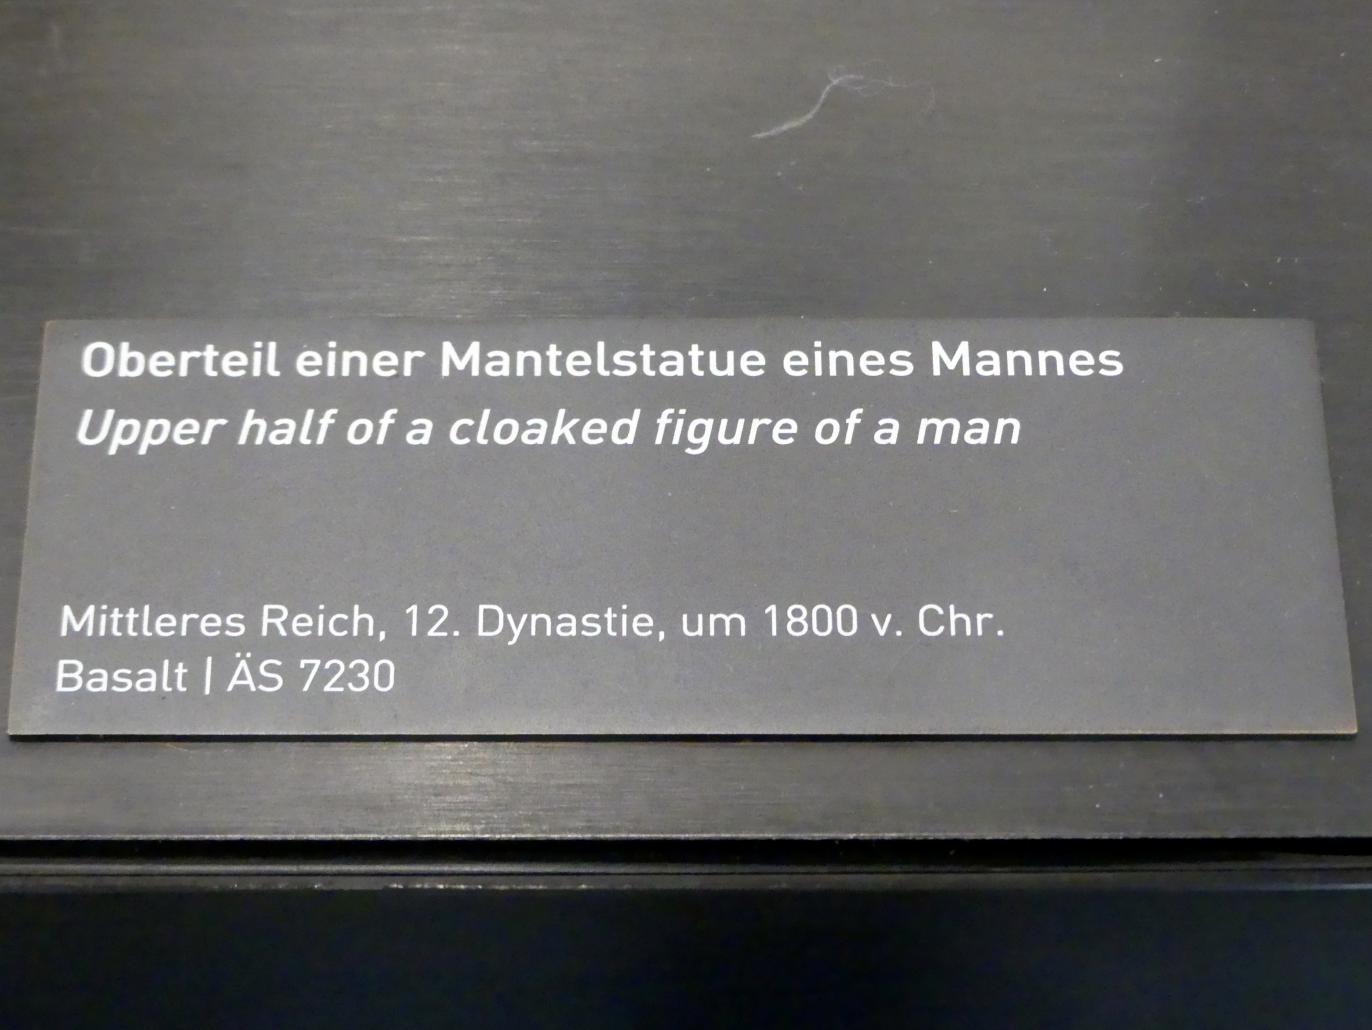 Oberteil einer Mantelstatue eines Mannes, 12. Dynastie, 1678 - 1634 v. Chr., 1800 v. Chr., Bild 2/2